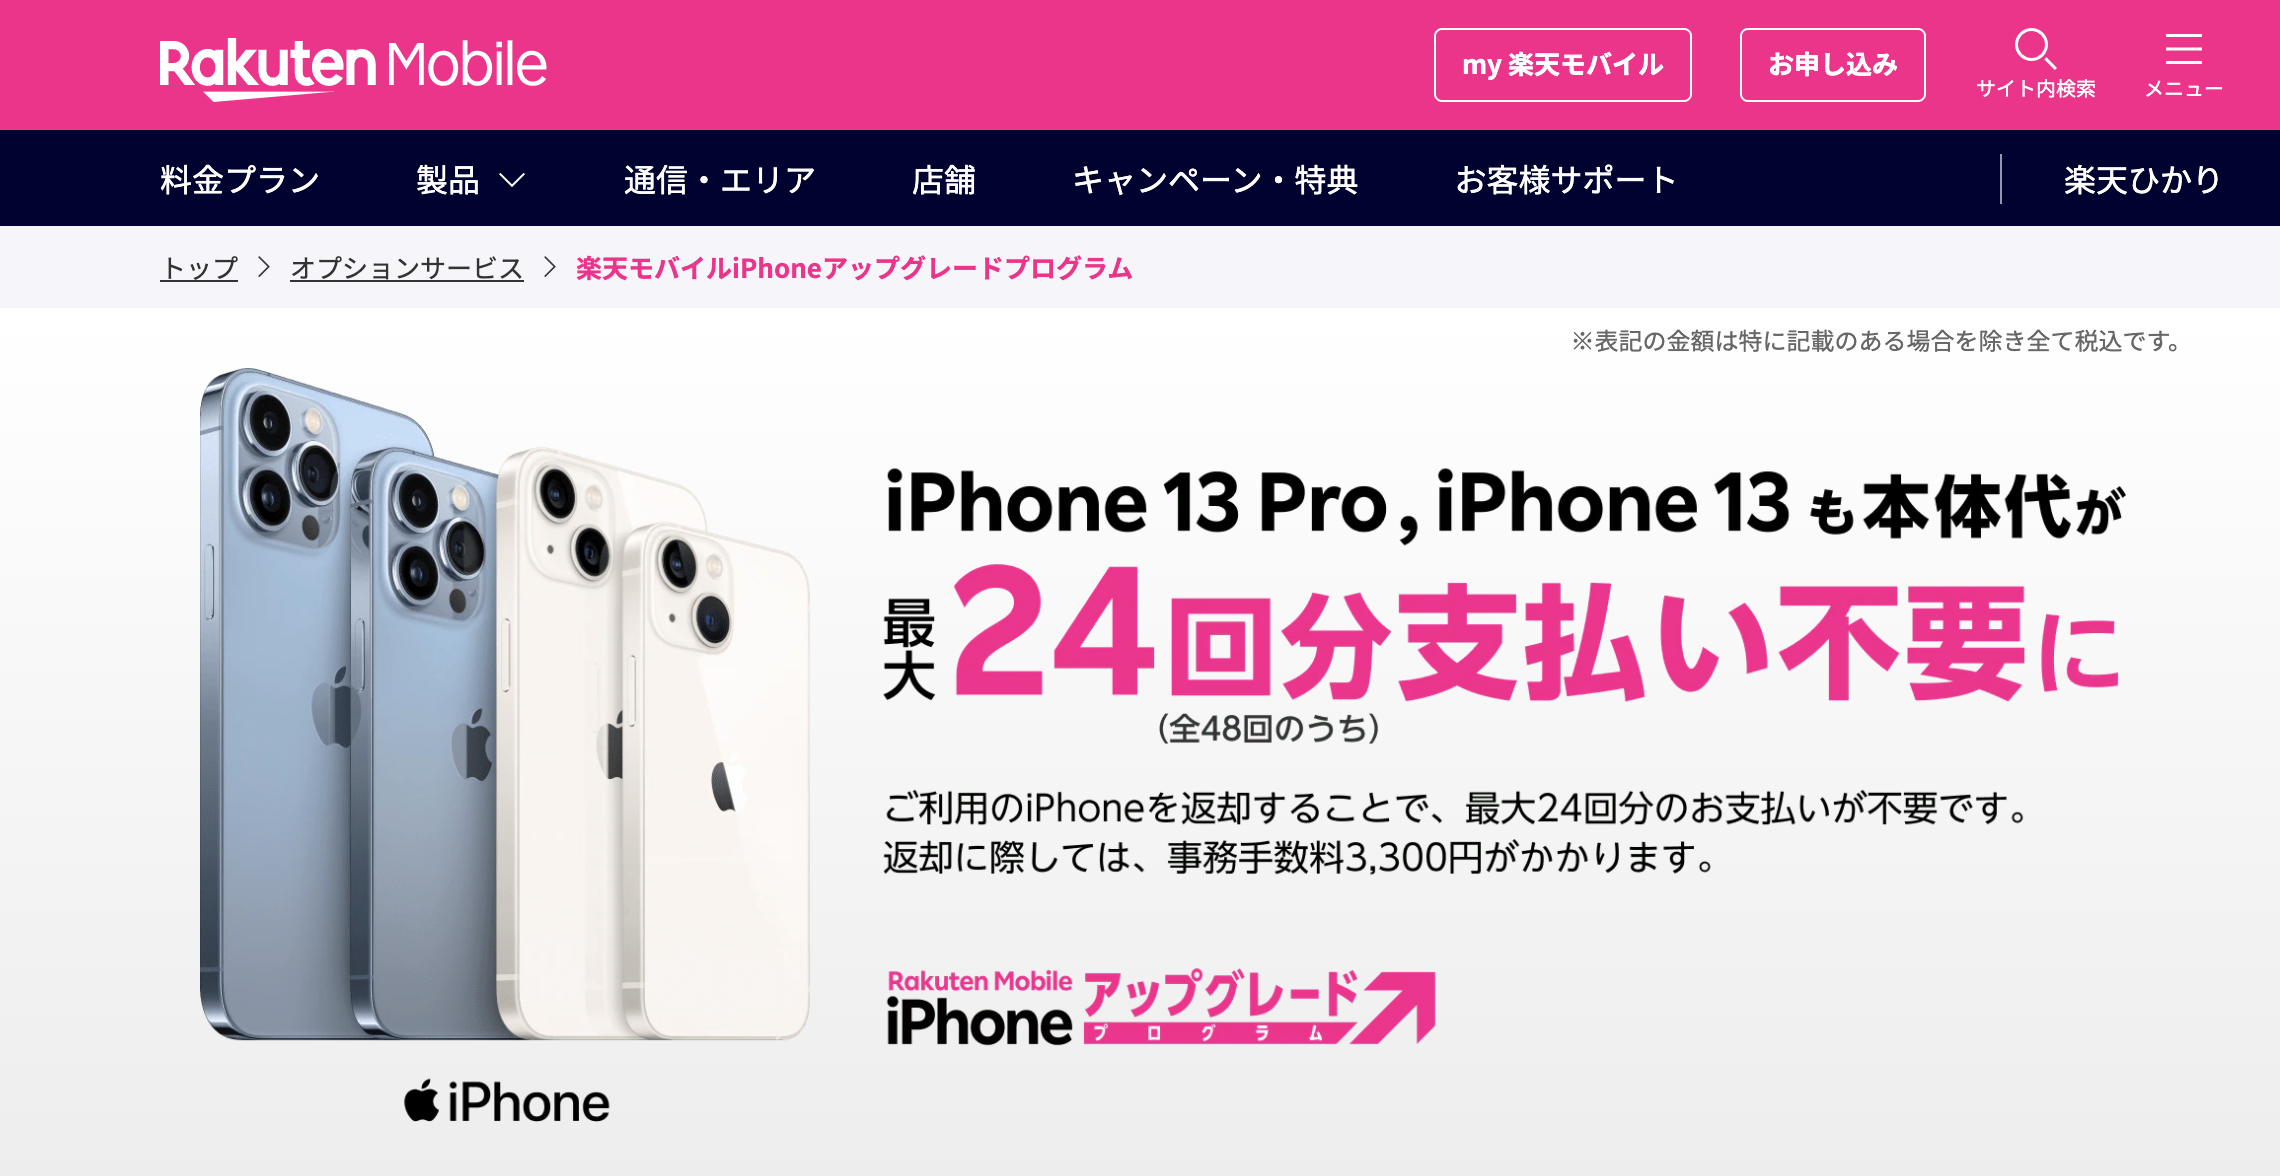 一括 楽天 モバイル iphone 楽天モバイルで購入したiPhoneを2年間使う場合のランニングコストを試算